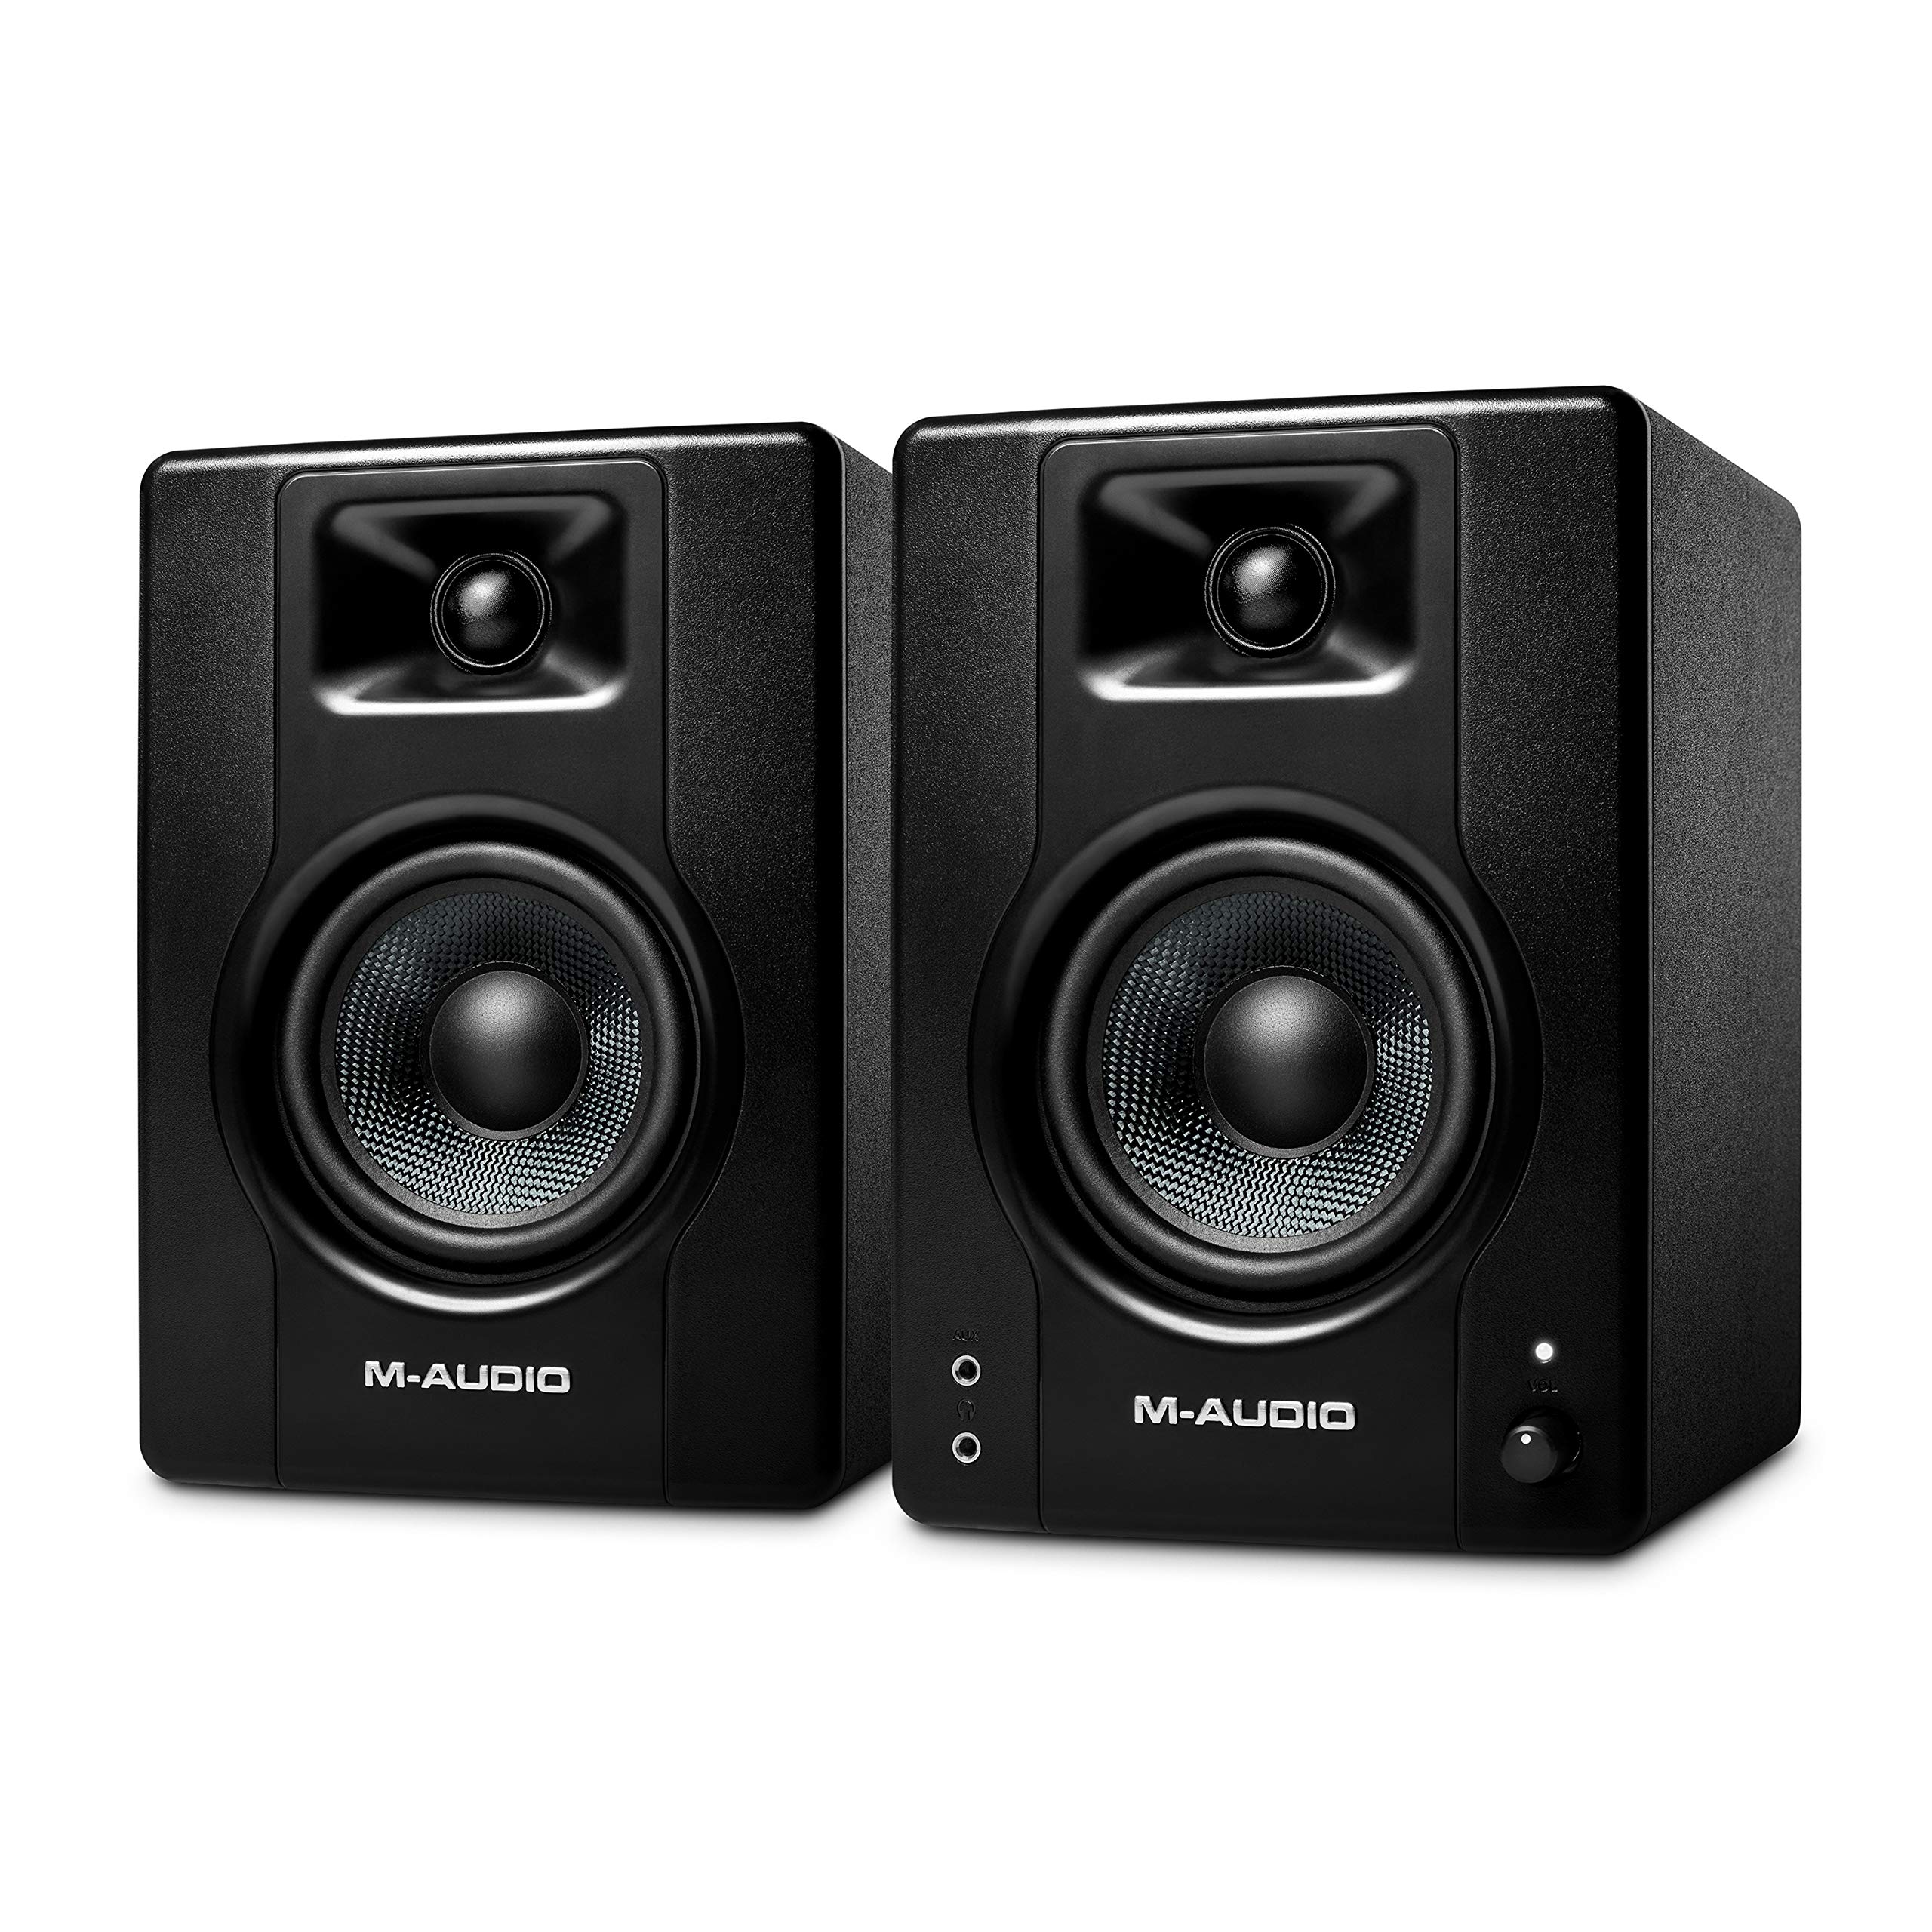 M-Audio BX4 4.5 フィート スタジオ モニター、音楽制作ソフトウェア付き録音およびマルチメディア用 HD PC スピーカー、120W、ペア